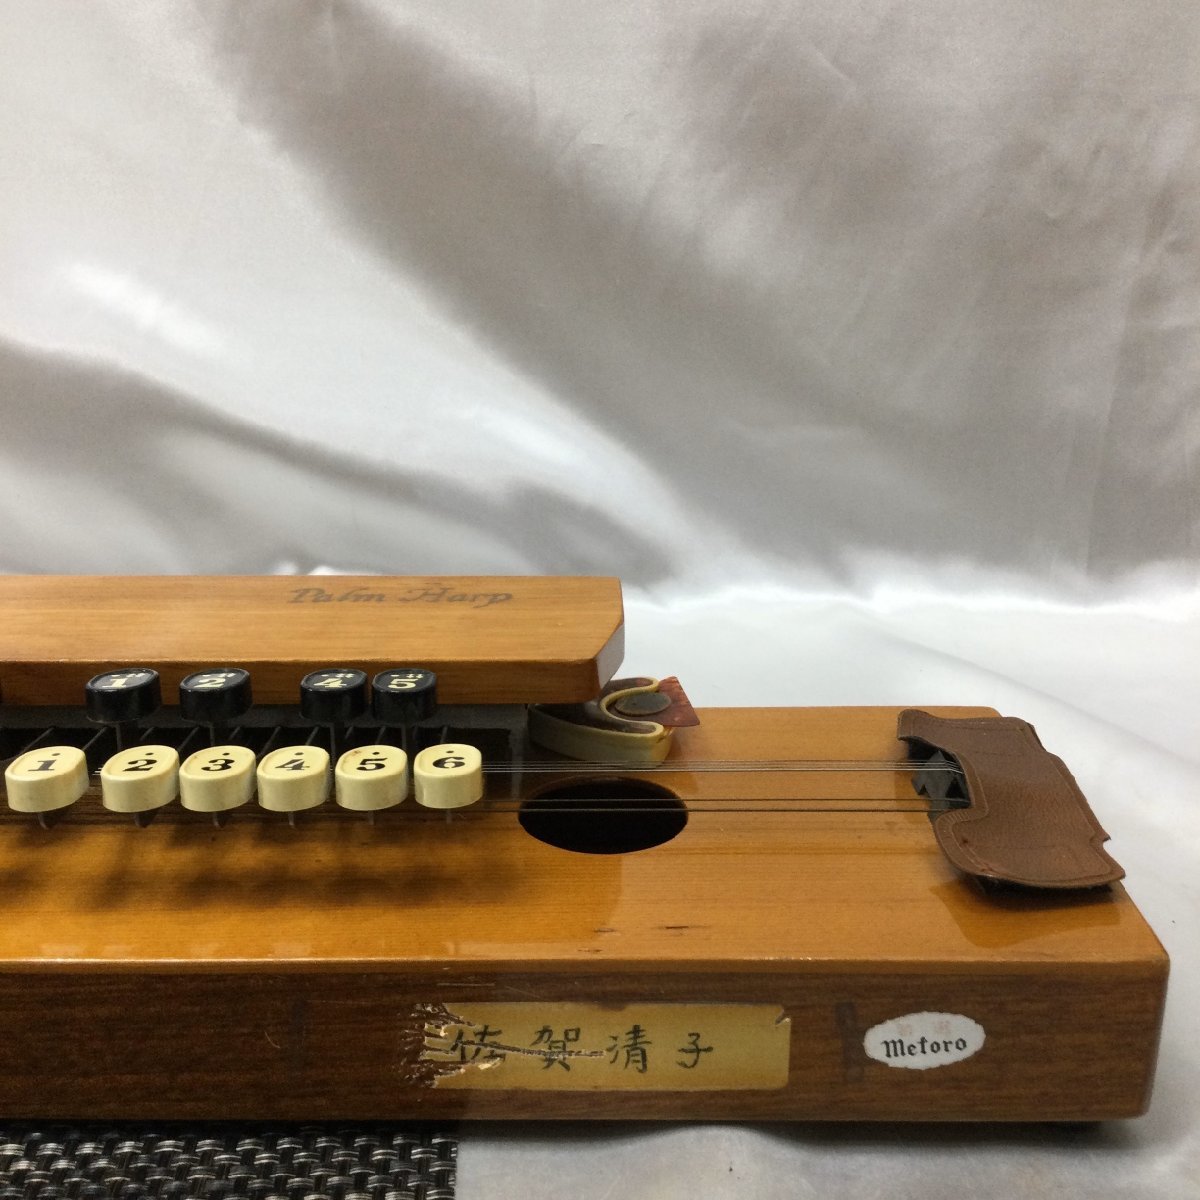 [ б/у / текущее состояние товар /TO]PALM HARP Taisho koto жесткий чехол имеется традиционные японские музыкальные инструменты работоспособность не проверялась б/у товар MZ0720